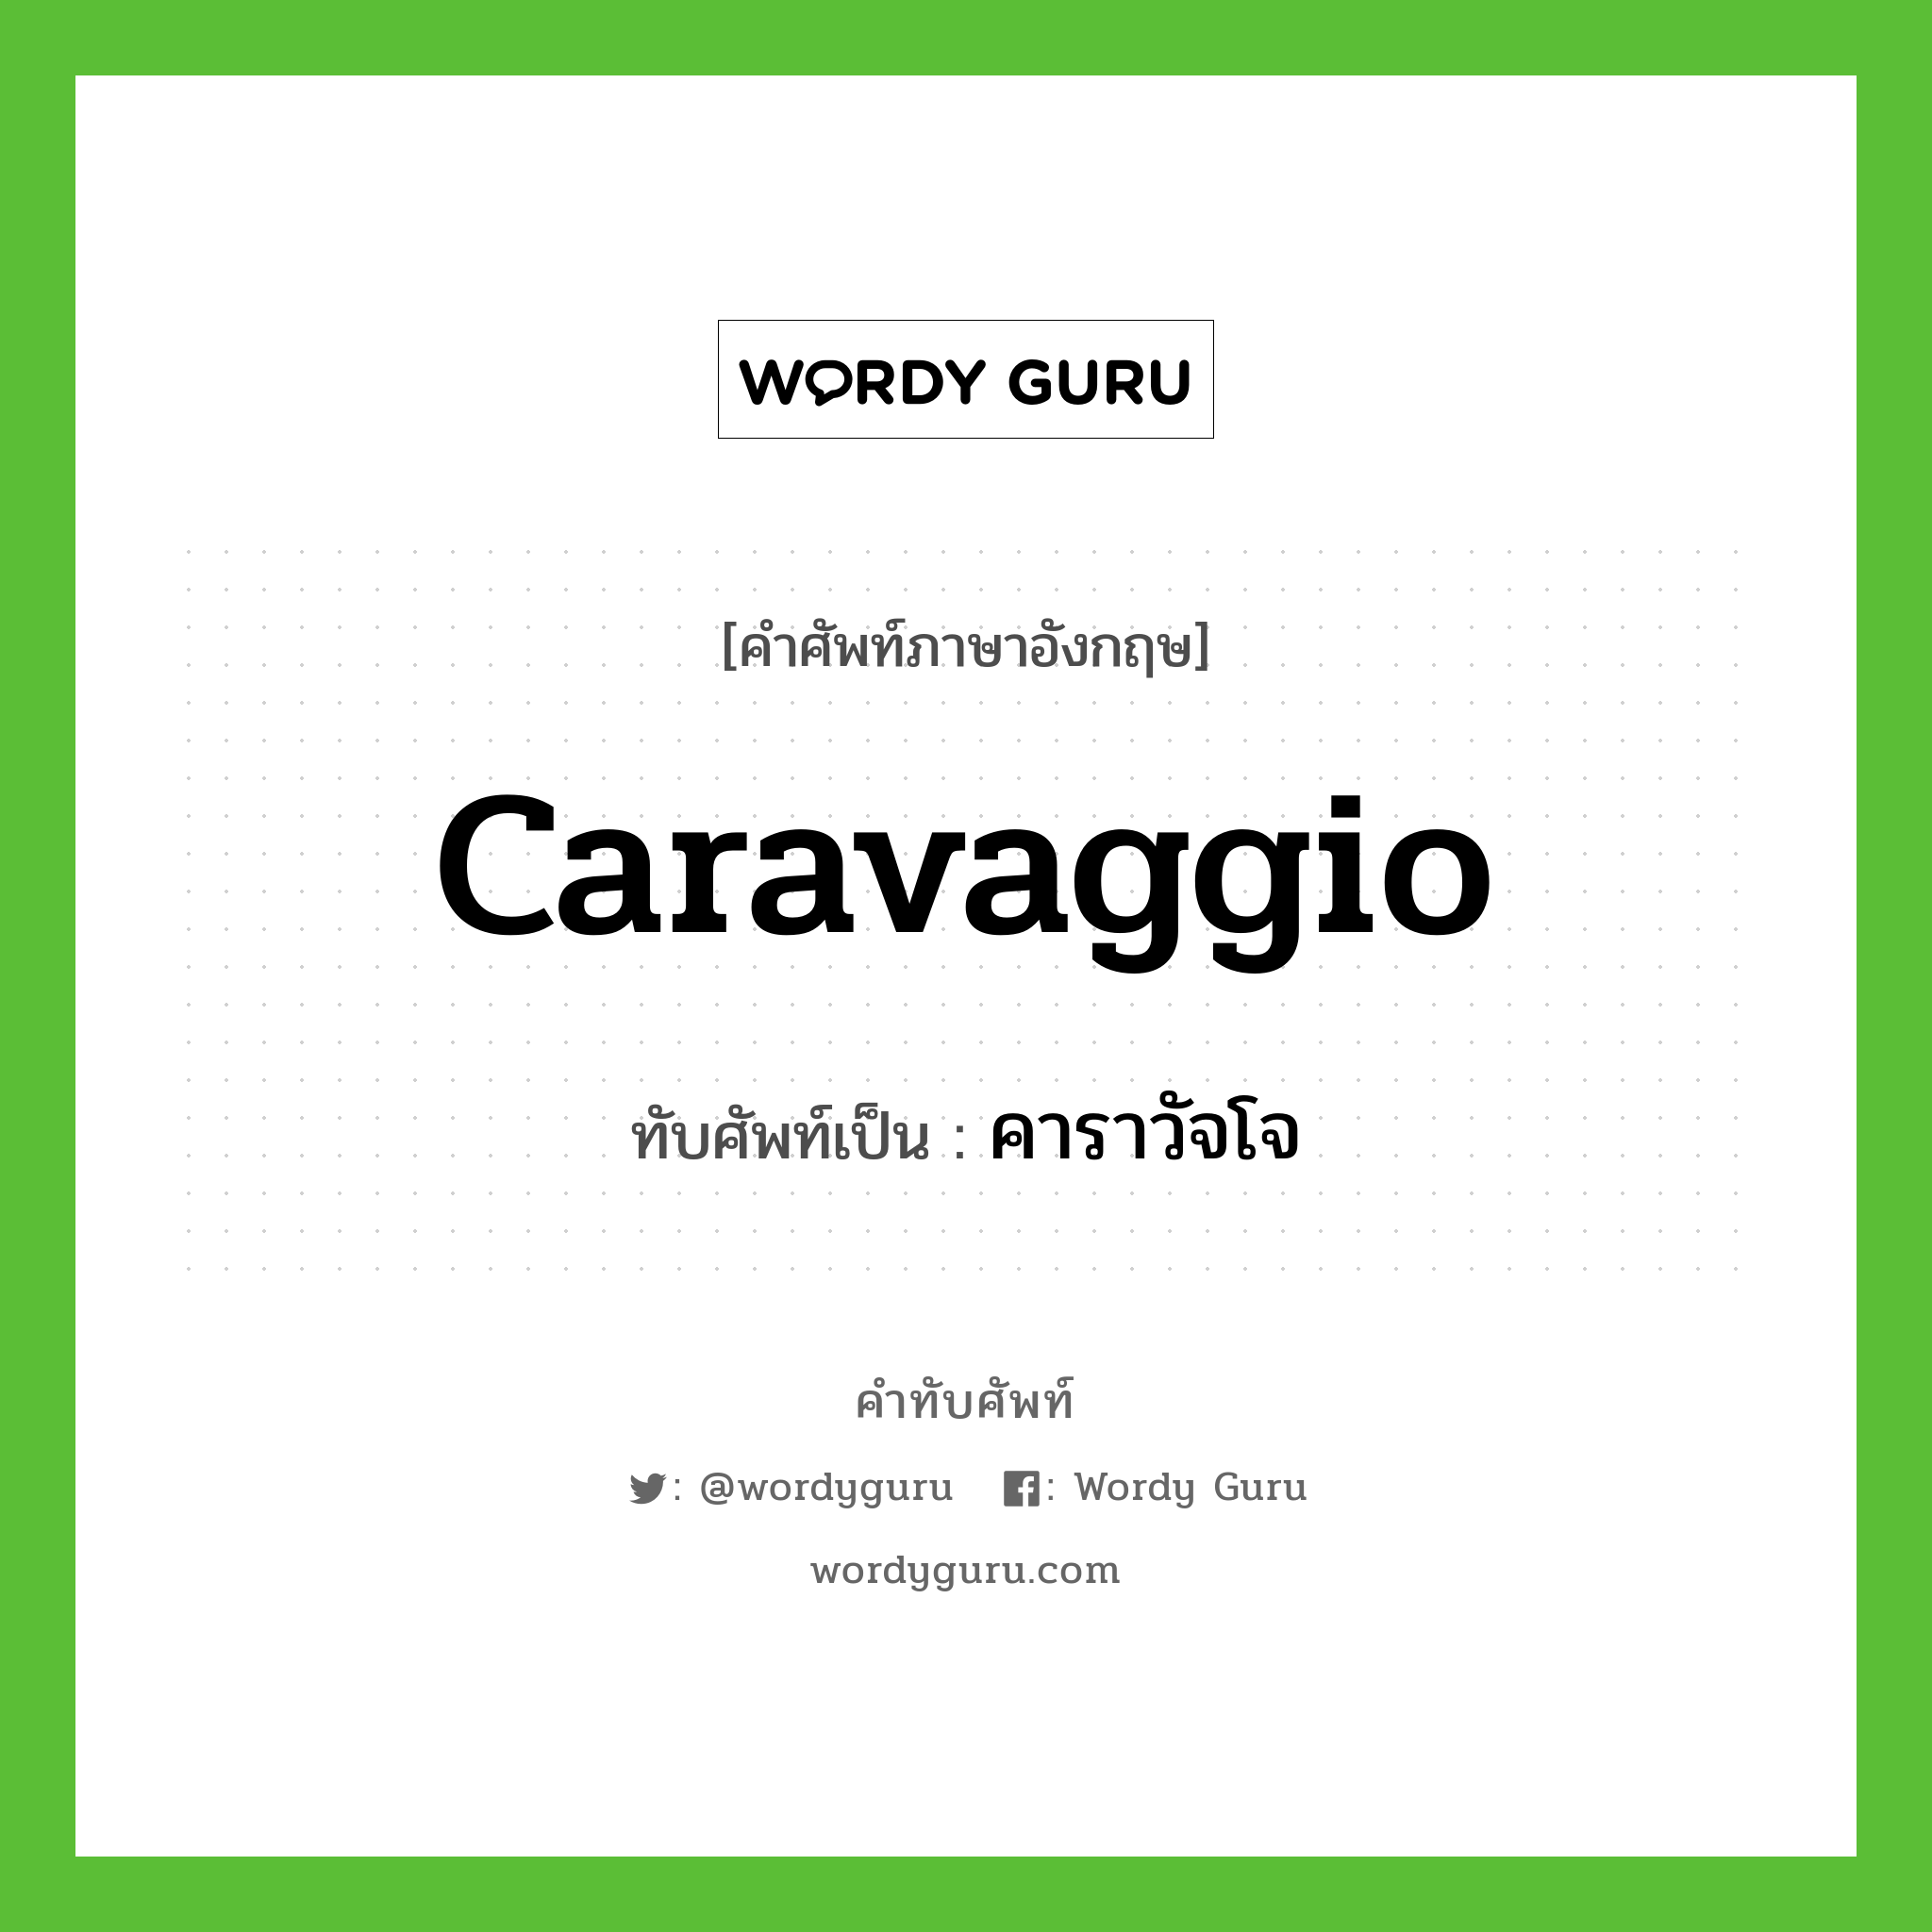 คาราวัจโจ เขียนอย่างไร?, คำศัพท์ภาษาอังกฤษ คาราวัจโจ ทับศัพท์เป็น Caravaggio